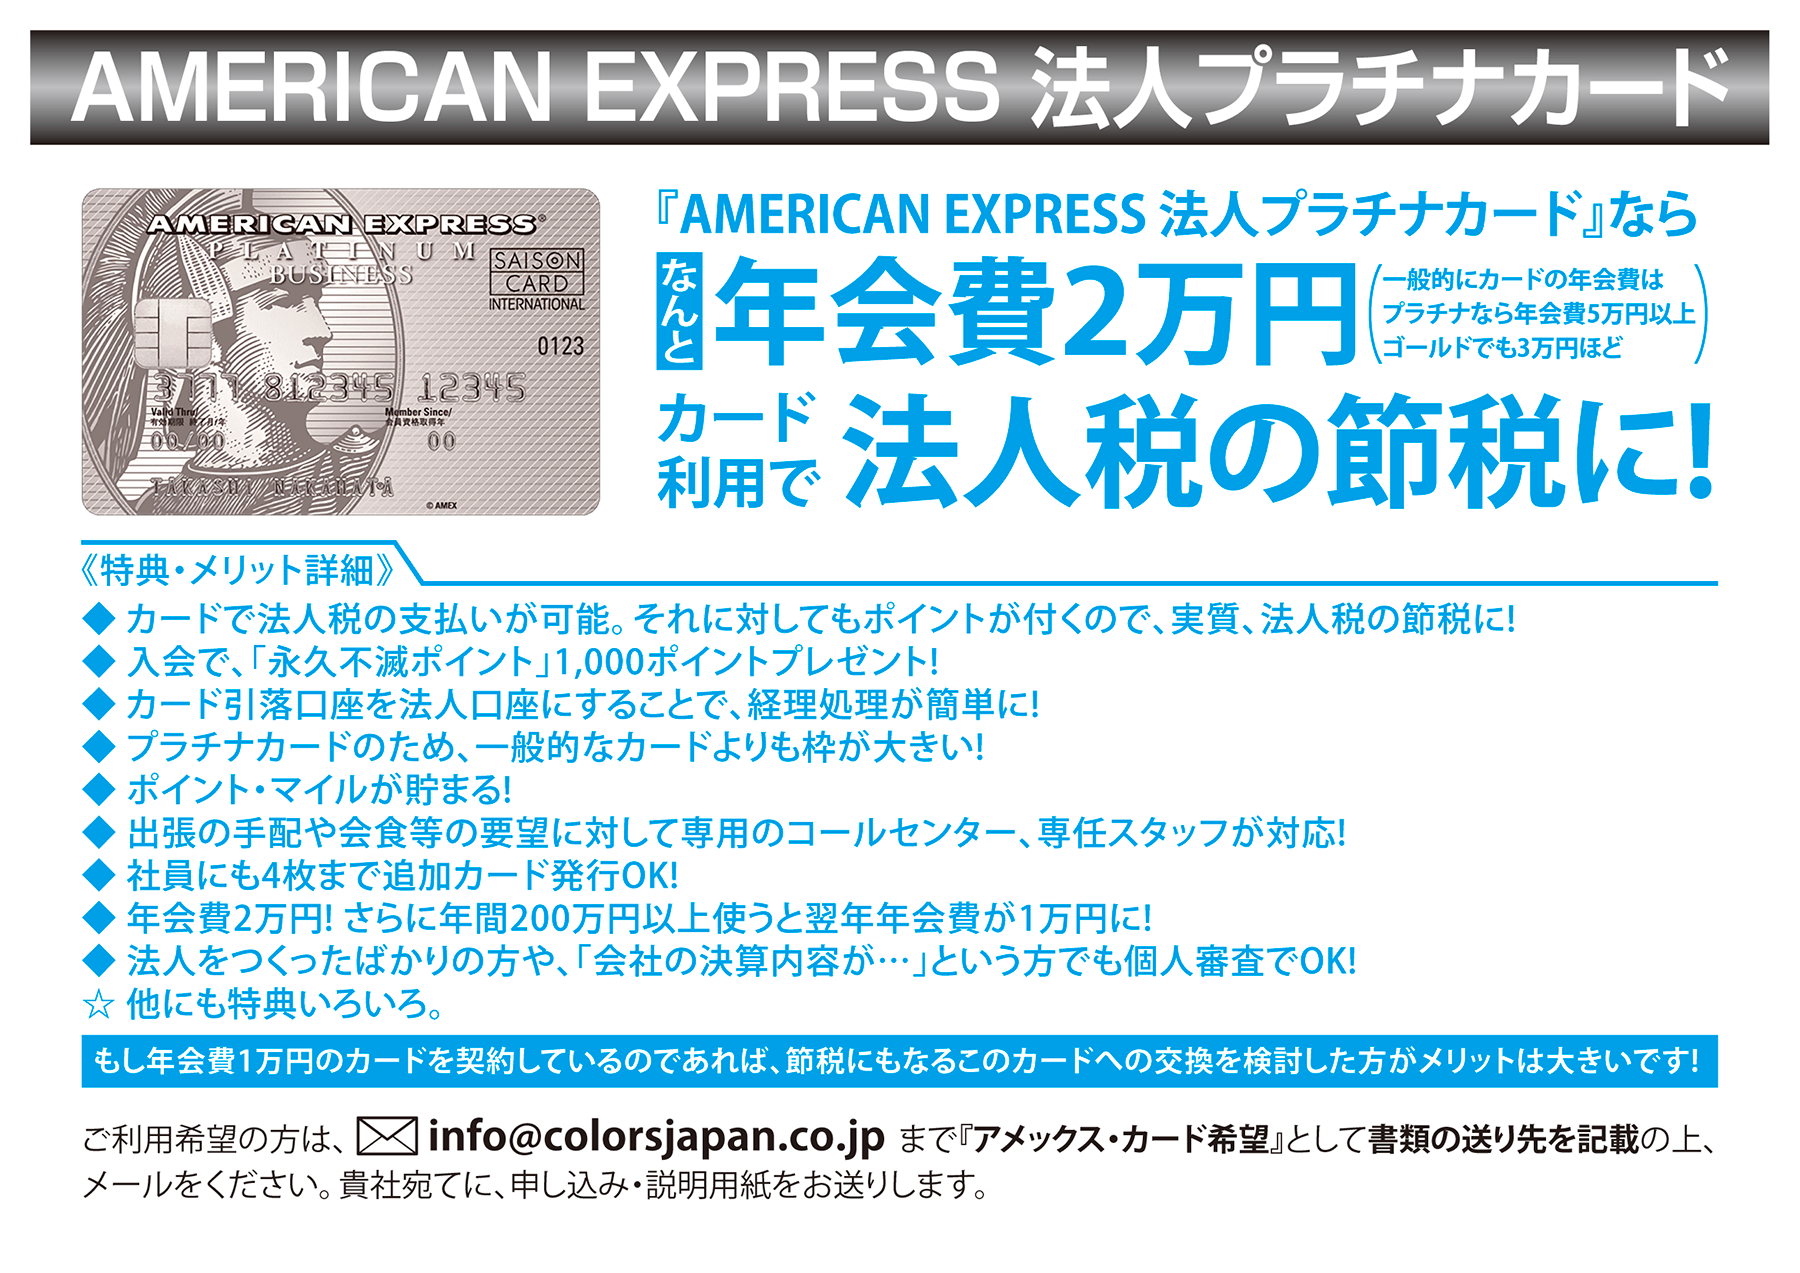 AMERICAN EXPRESS 法人プラチナカード